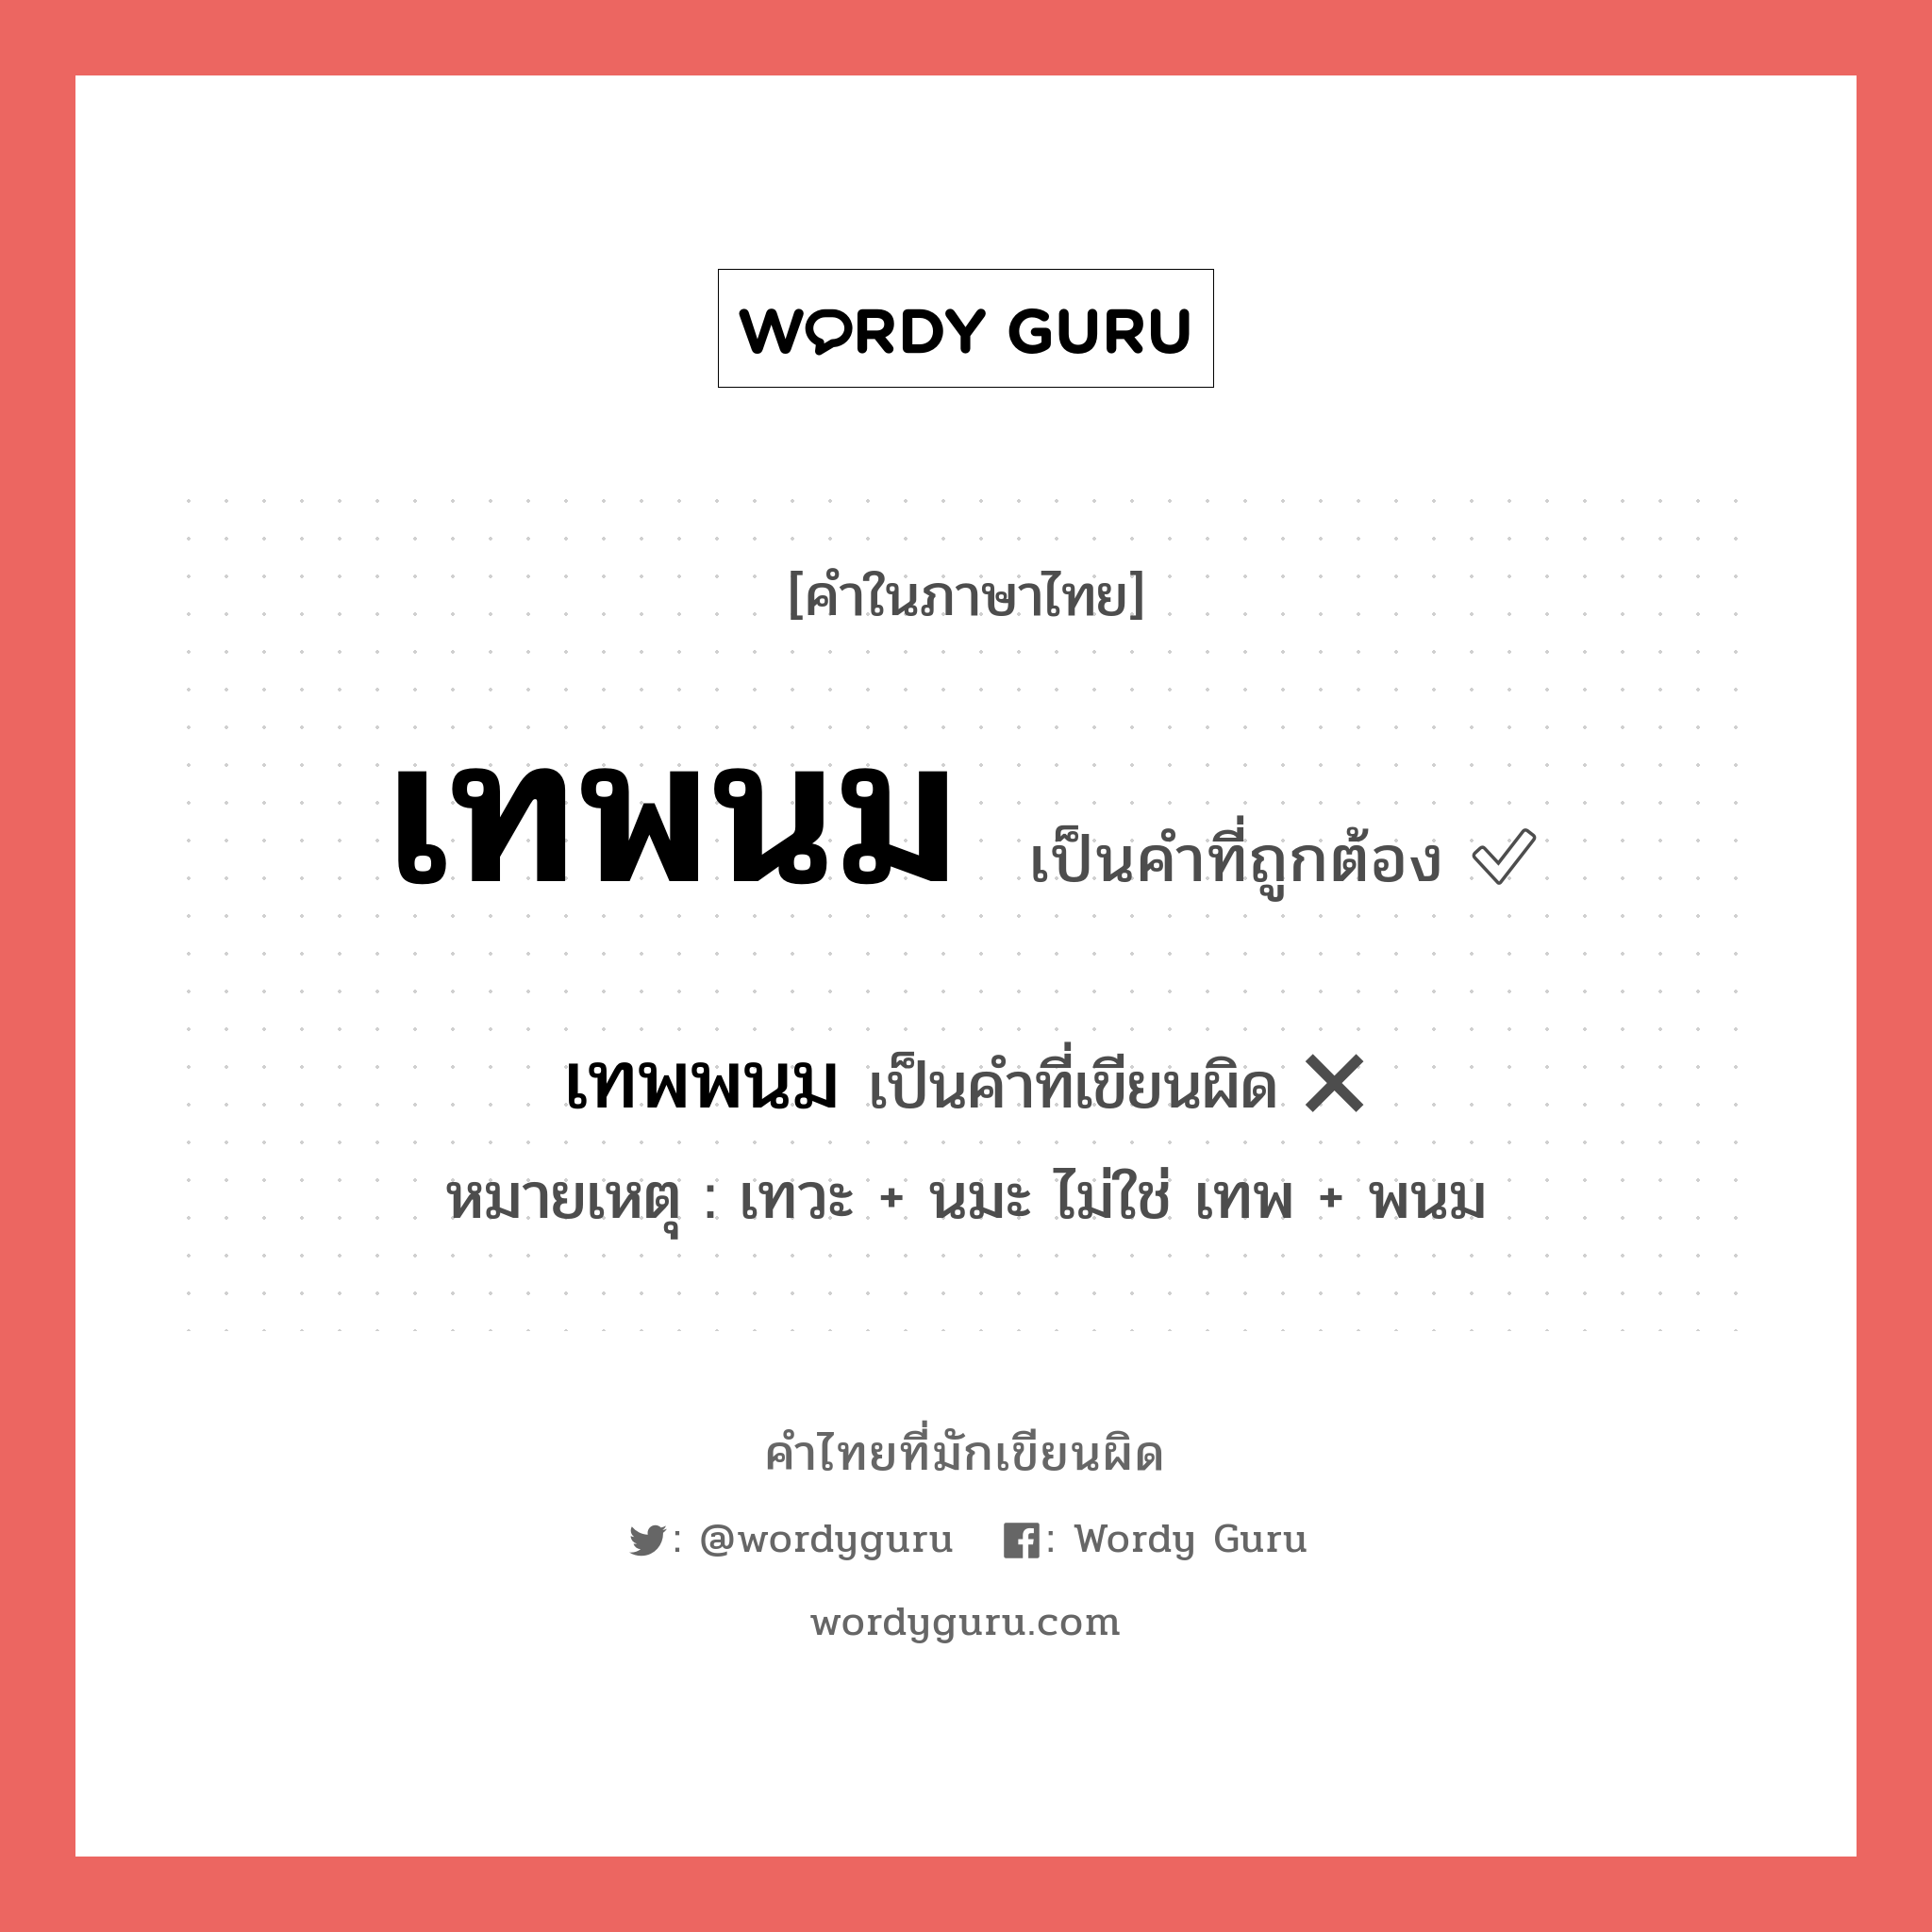 เทพพนม หรือ เทพนม คำไหนเขียนถูก?, คำในภาษาไทยที่มักเขียนผิด เทพพนม คำที่ผิด ❌ เทพนม หมายเหตุ เทวะ + นมะ ไม่ใช่ เทพ + พนม